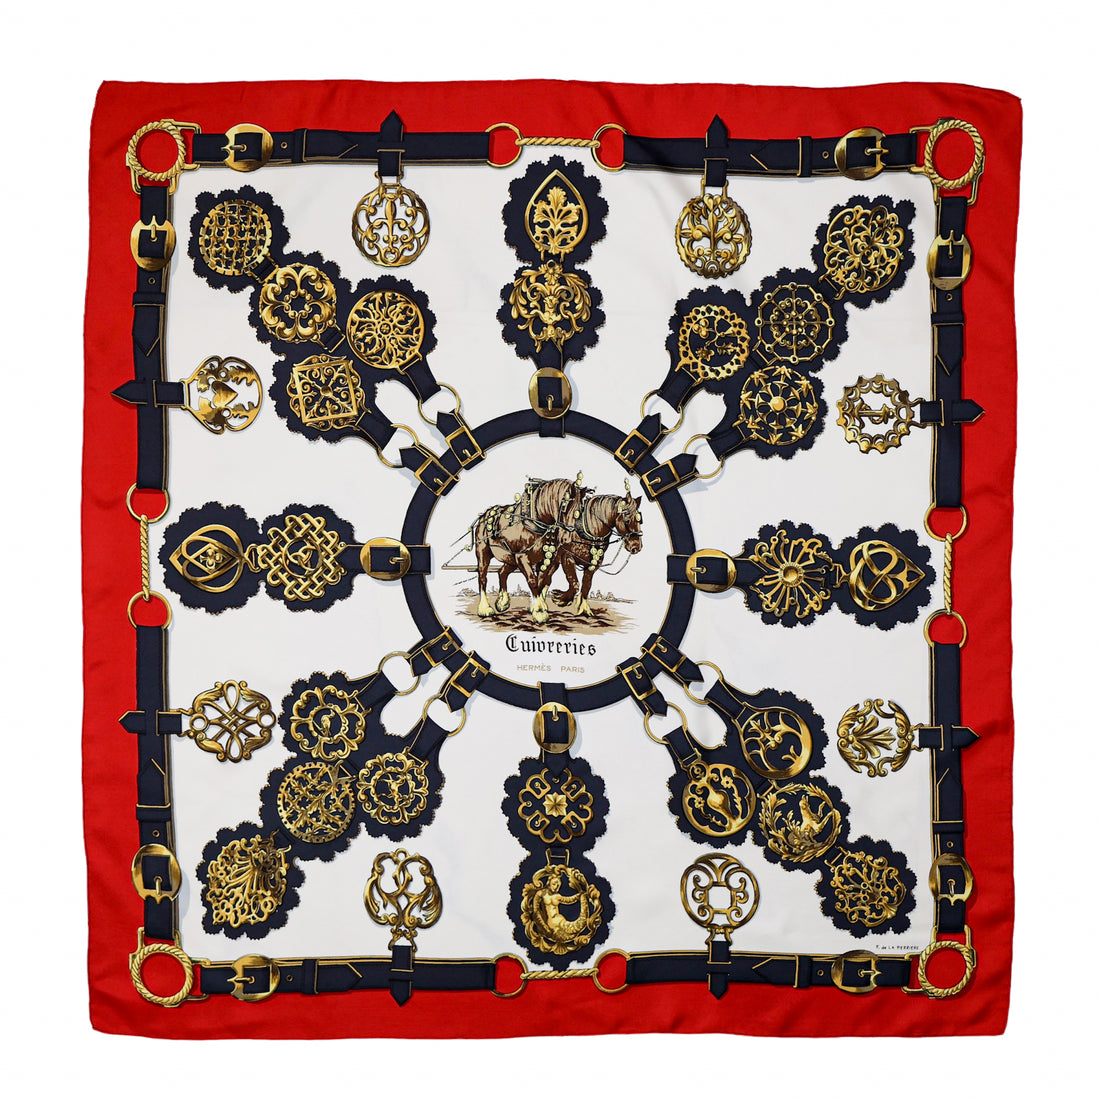 Hermès "Cuivreries" silk scarf in red